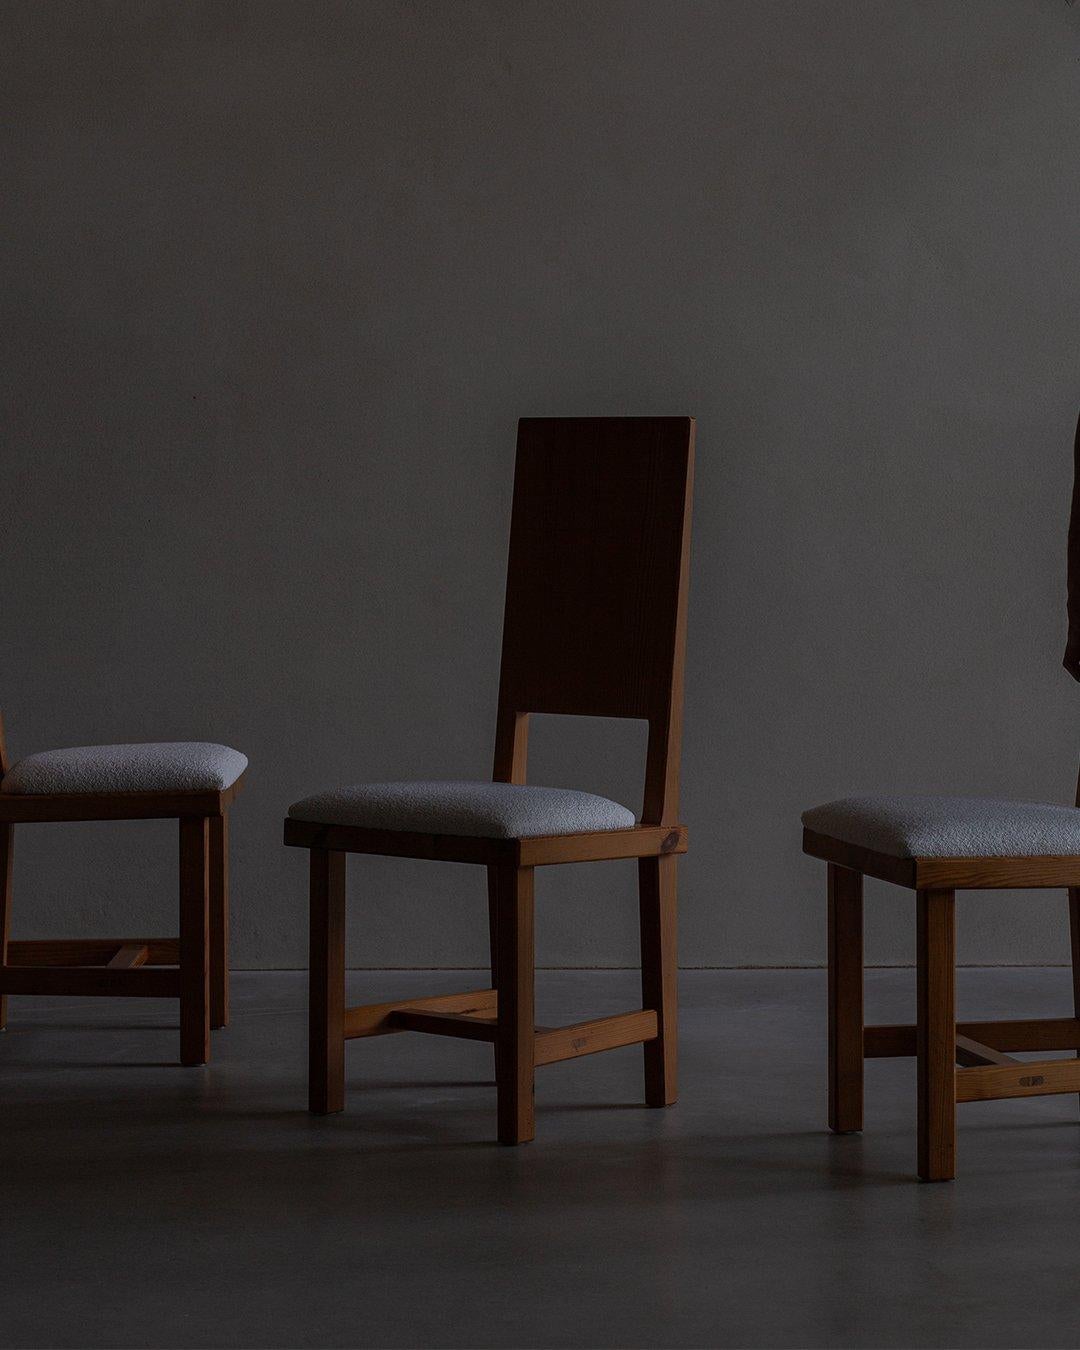 Satz von 4 Esszimmerstühlen von Göran Malmvall, neu gepolstert mit einem schönen cremefarbenen Bouclé. Göran Malmvall war eine herausragende Persönlichkeit des schwedischen Möbeldesigns (1917-2001), der mit seinen ikonischen Stühlen aus Kiefernholz,